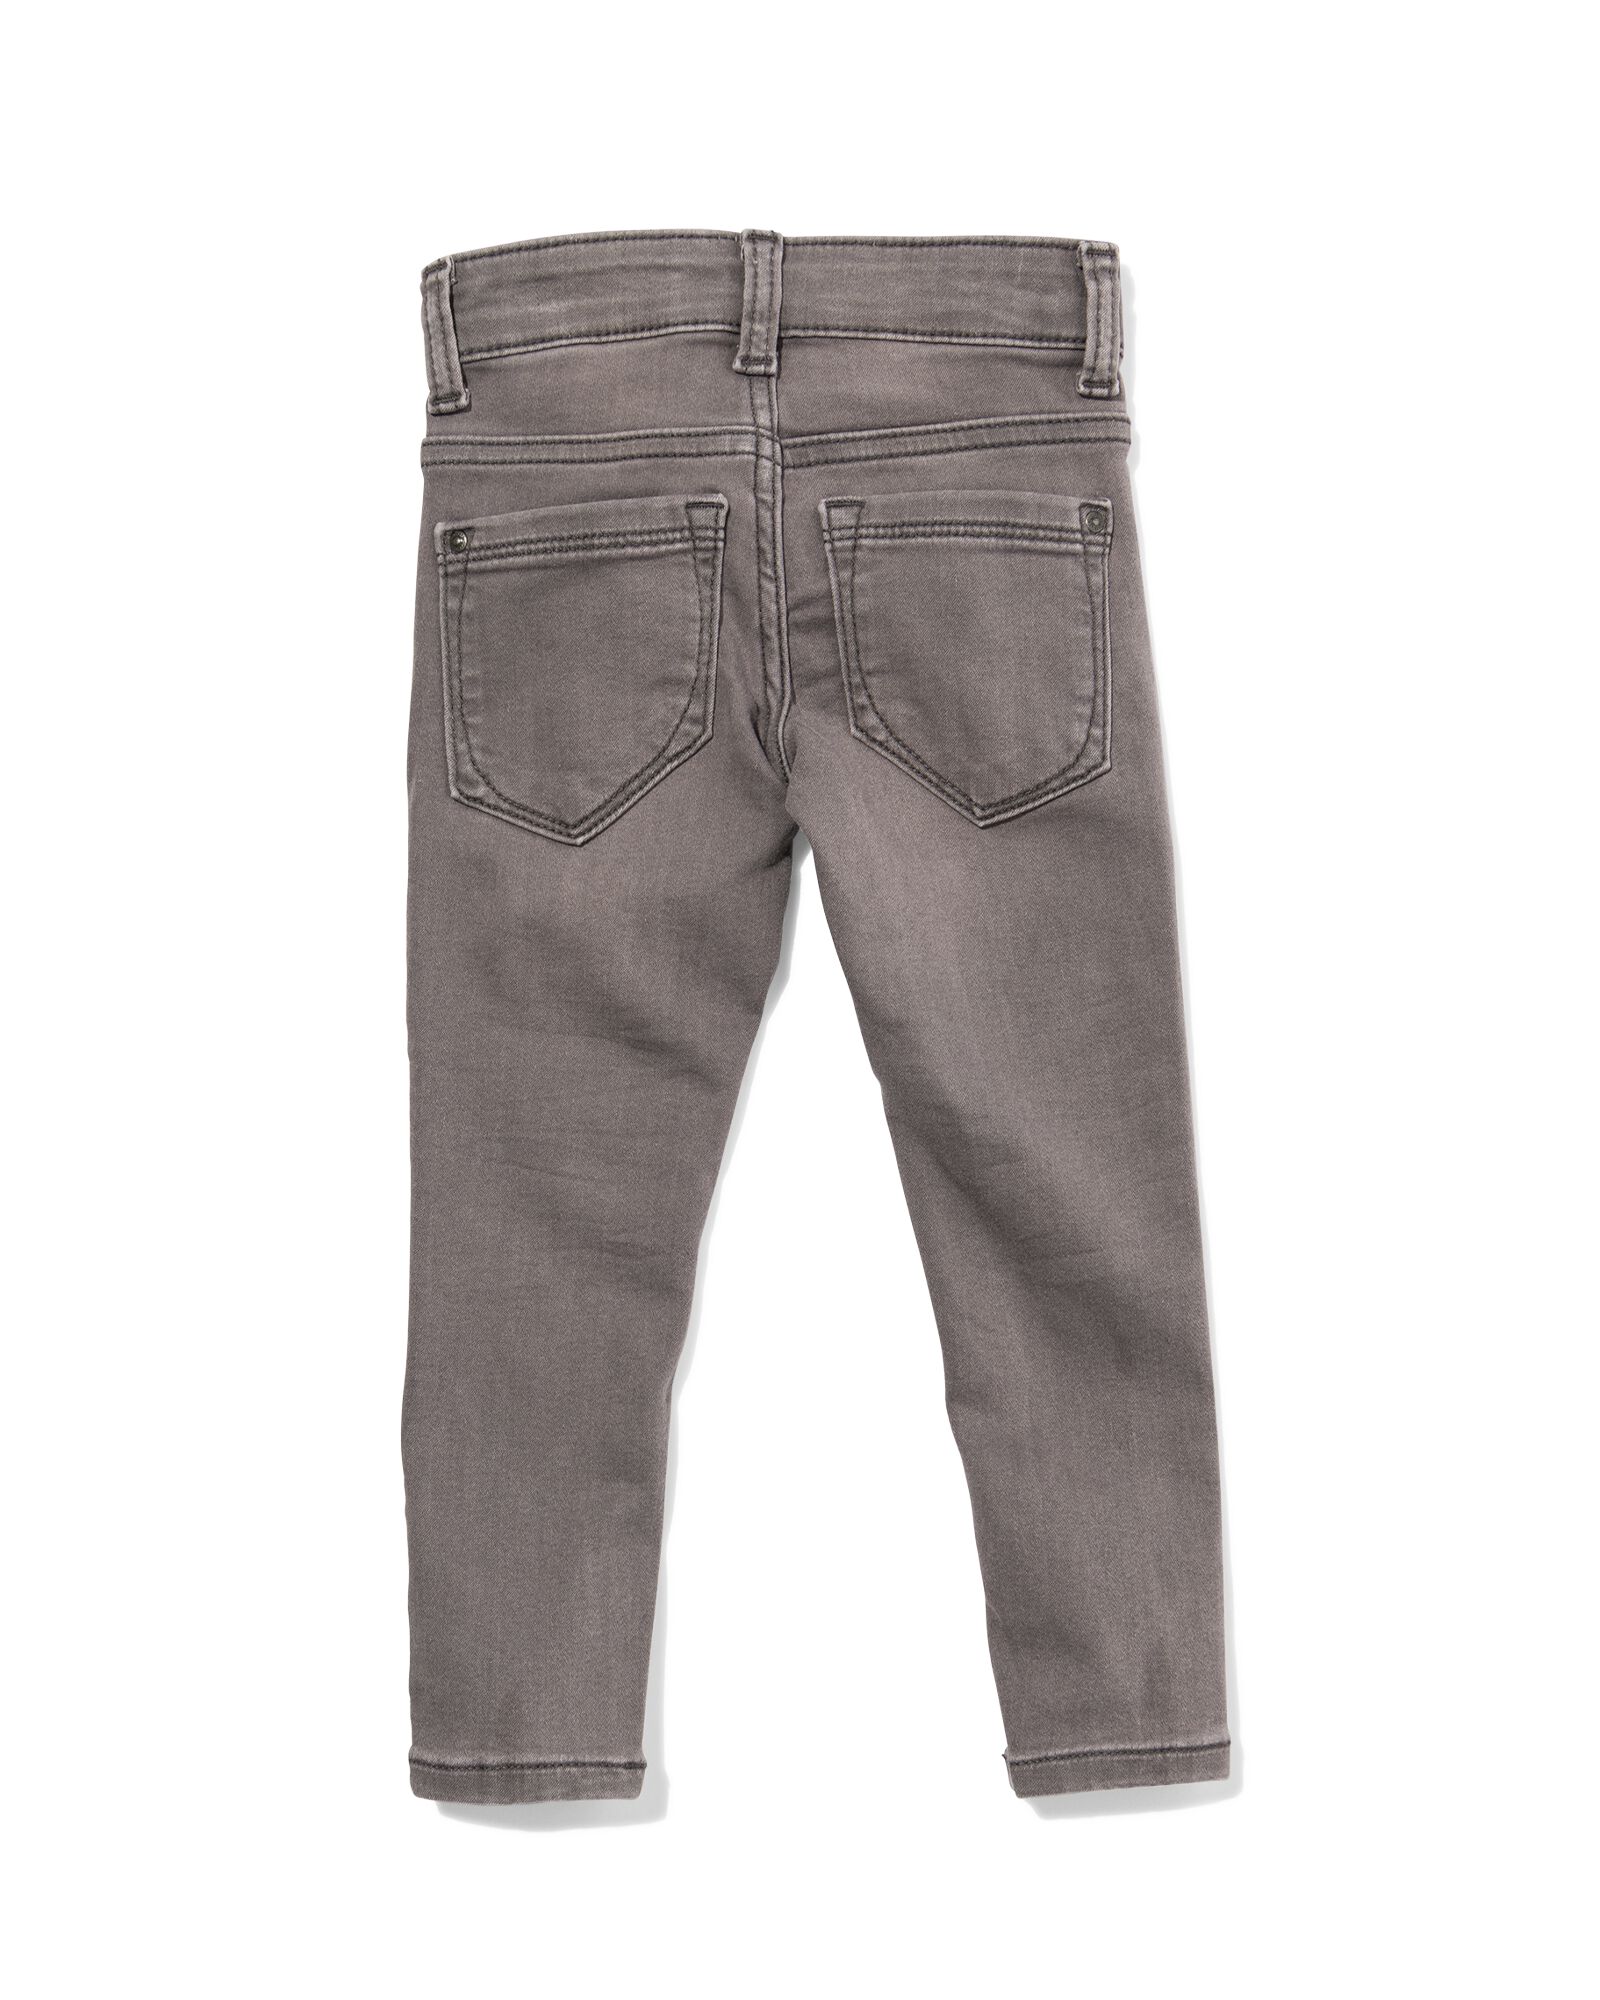 kinder jeans skinny fit grijs 158 - 30874882 - HEMA